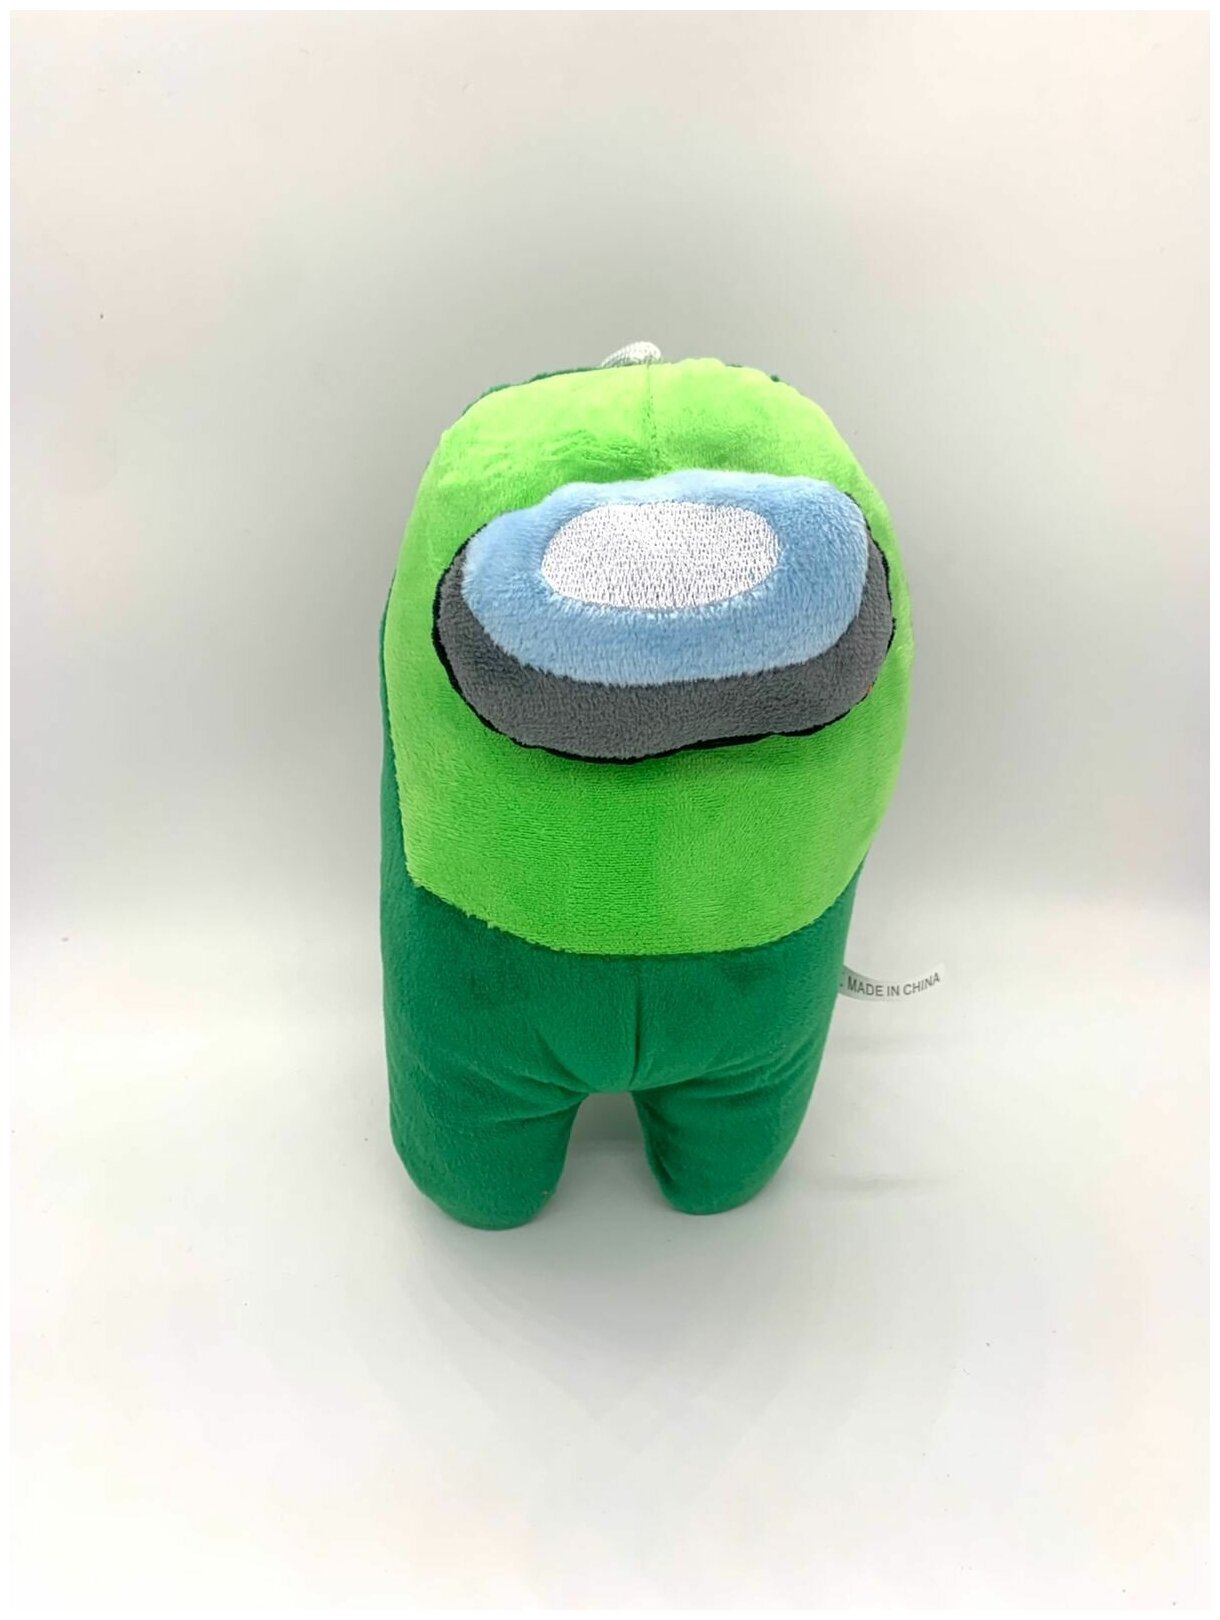 Мягкая плюшевая игрушка Амонг ас (Among us) 20 см зеленая